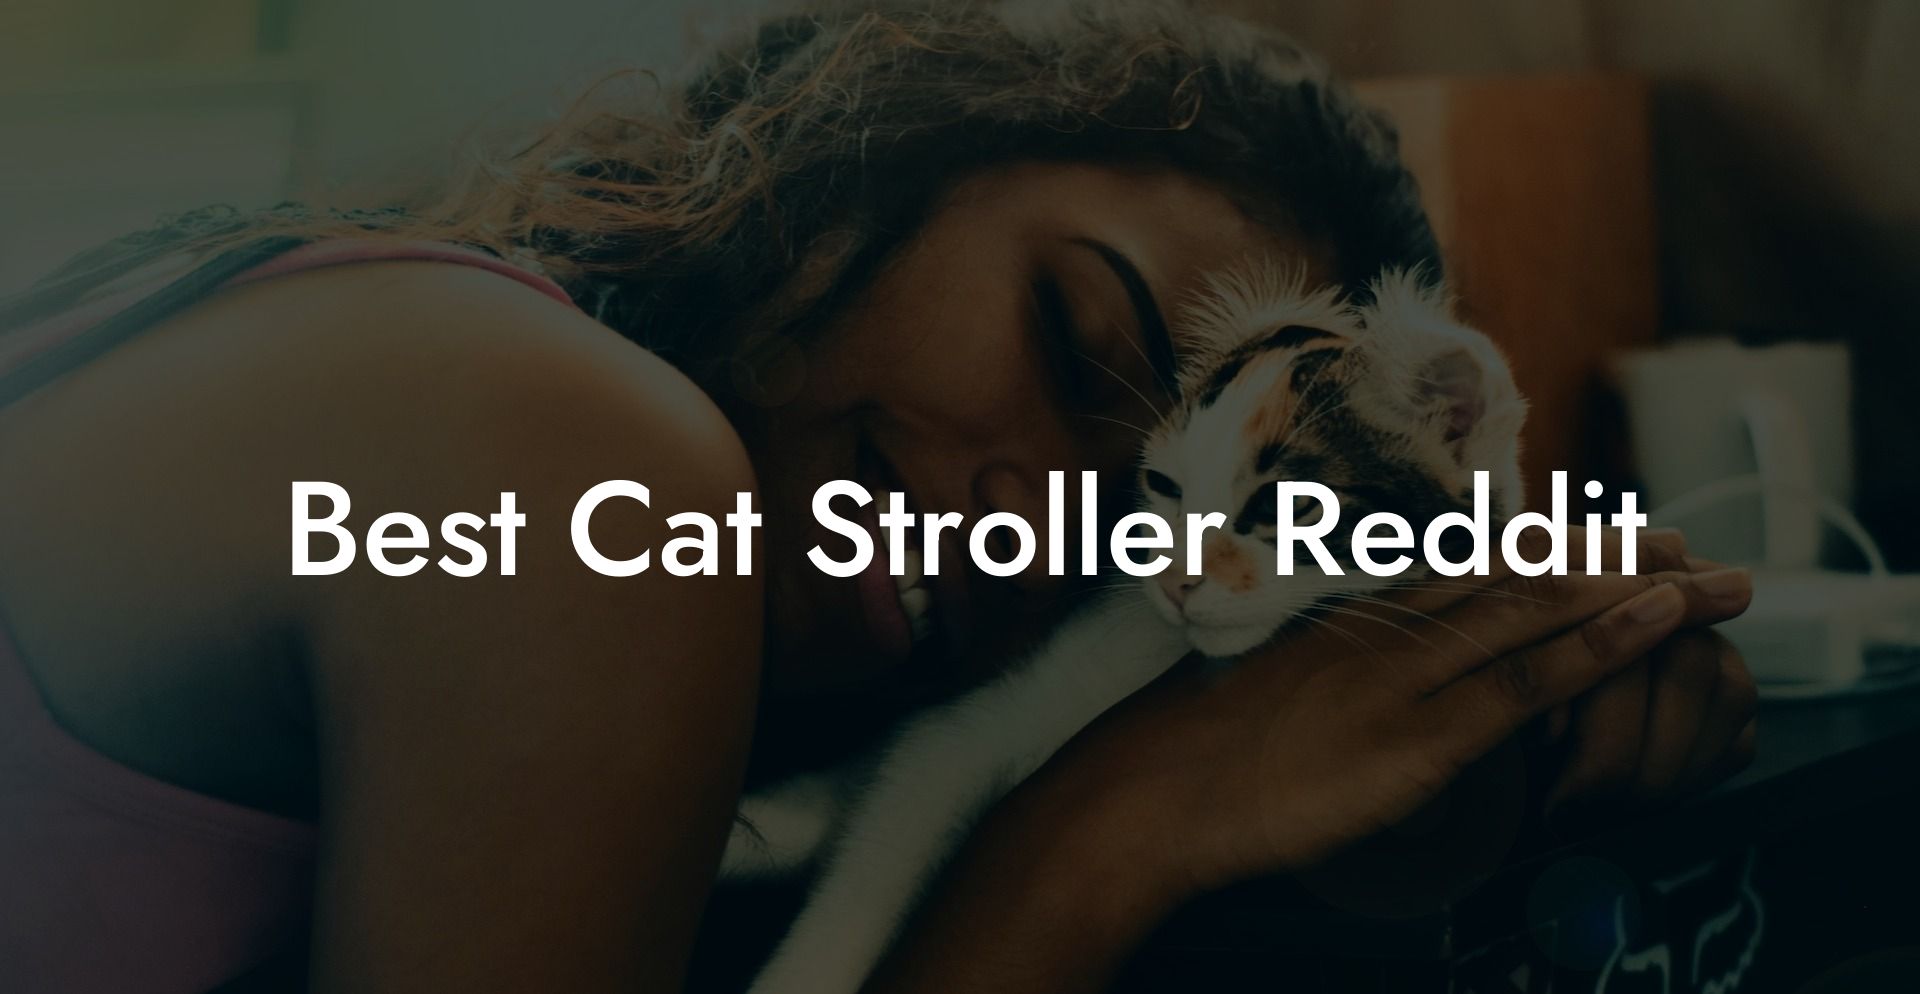 Best Cat Stroller Reddit